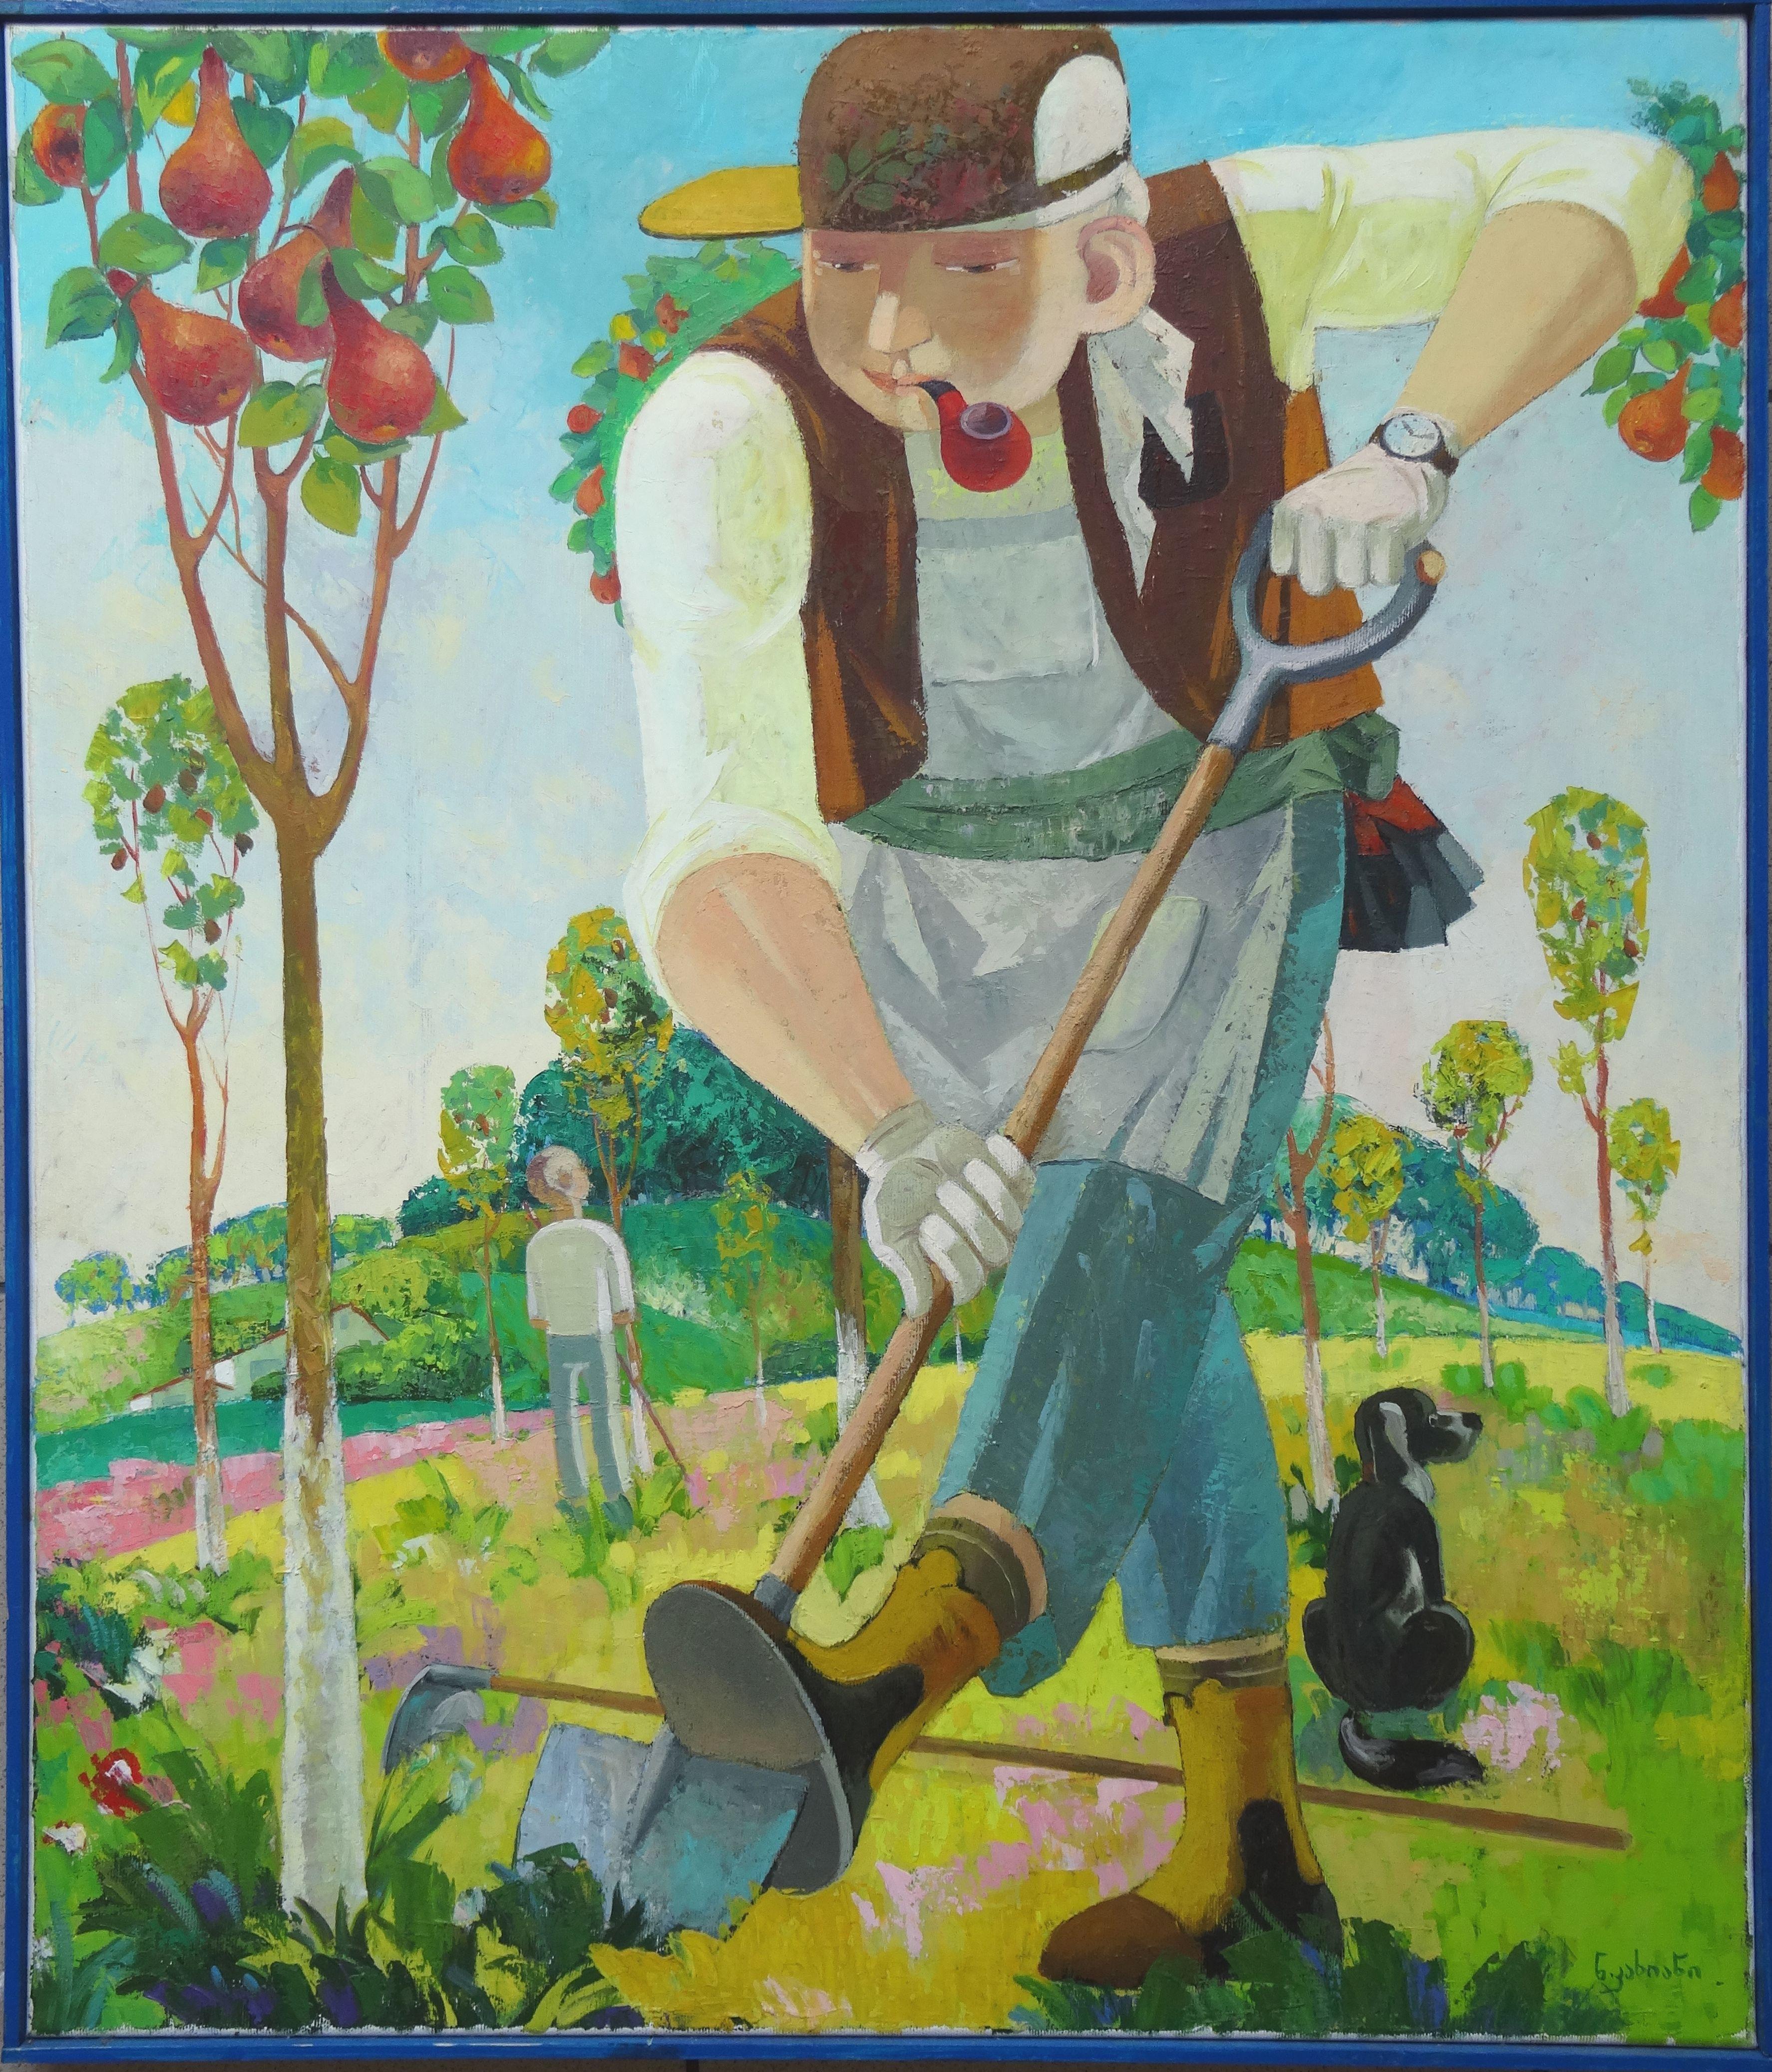 Gardener. 2018. Oil on canvas, 70x60 cm - Painting by Nugzar Kakhiani (Kahiani)